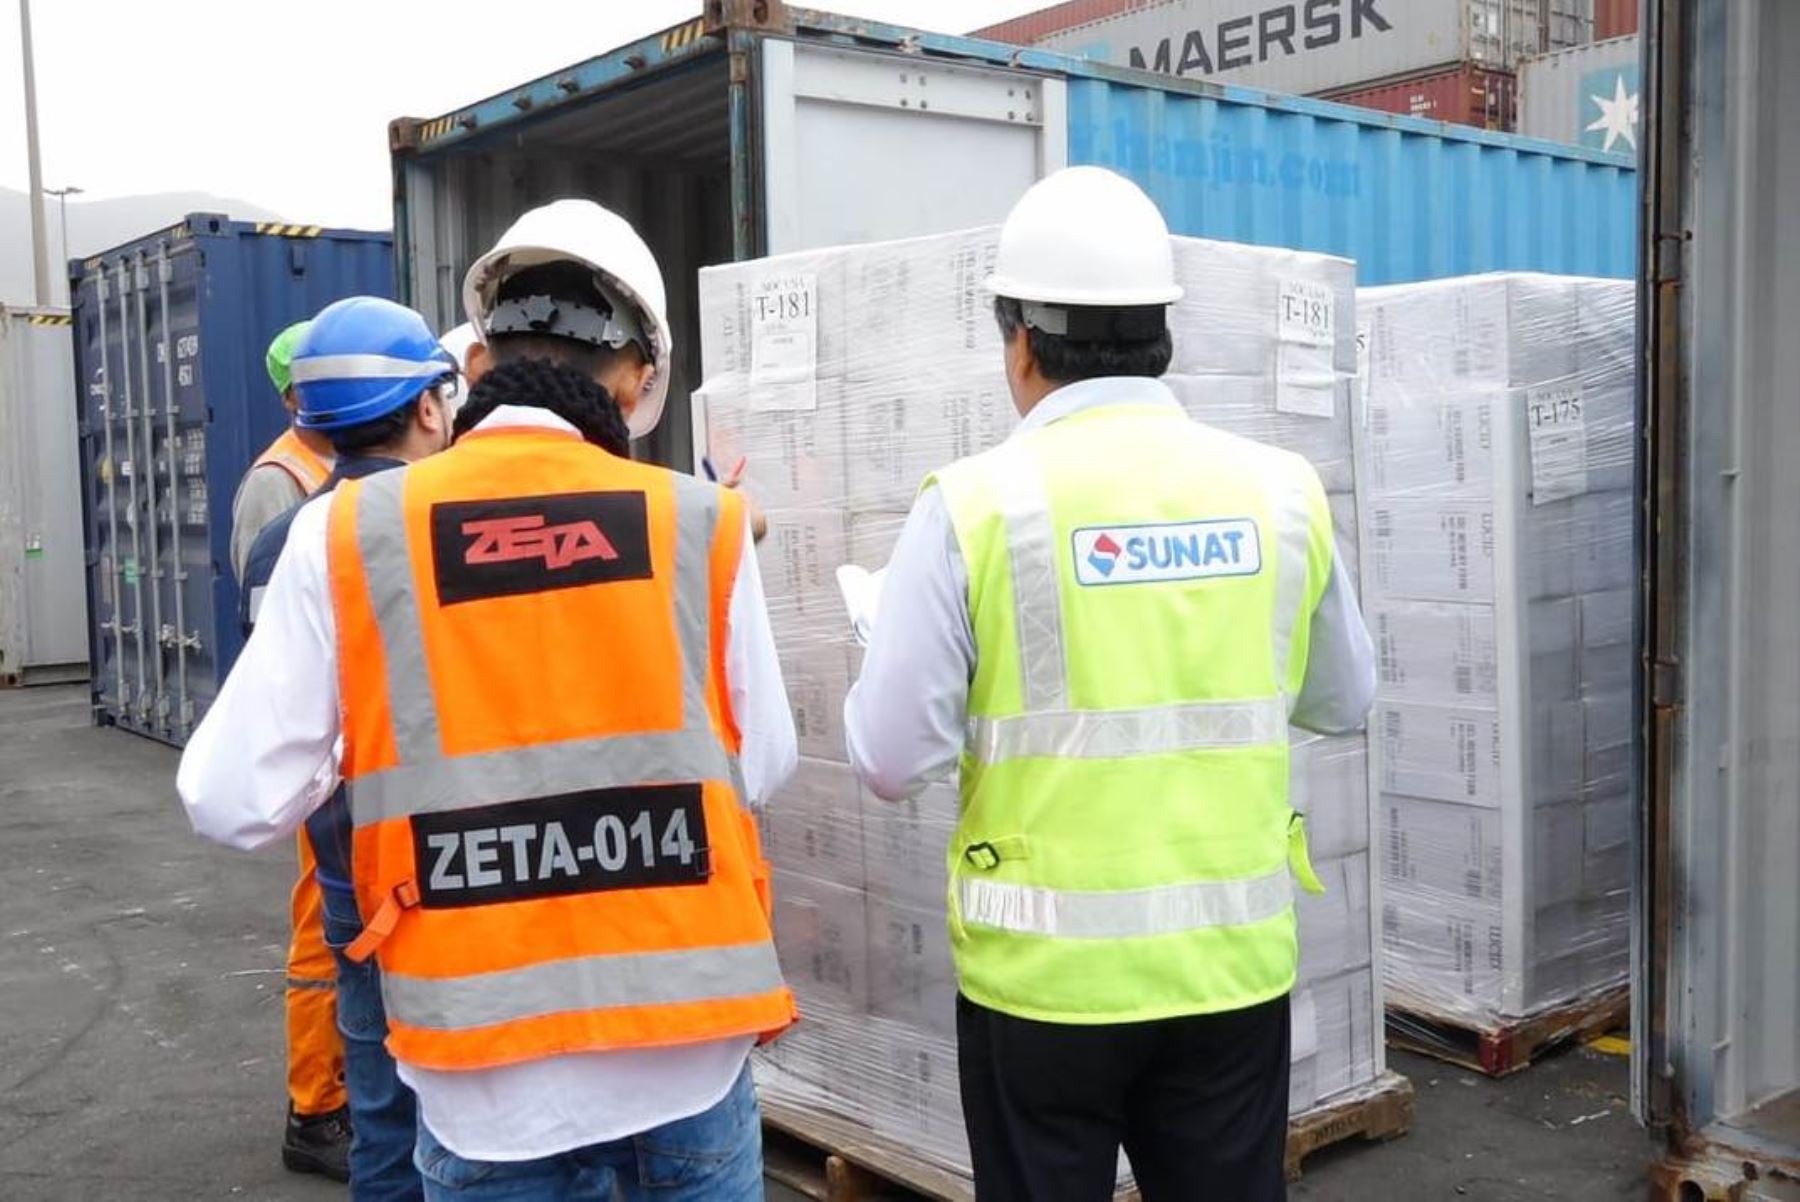 Panamericanos 2019: Sunat facilita ingreso de 750 toneladas de bienes. Foto: ANDINA/Difusión.